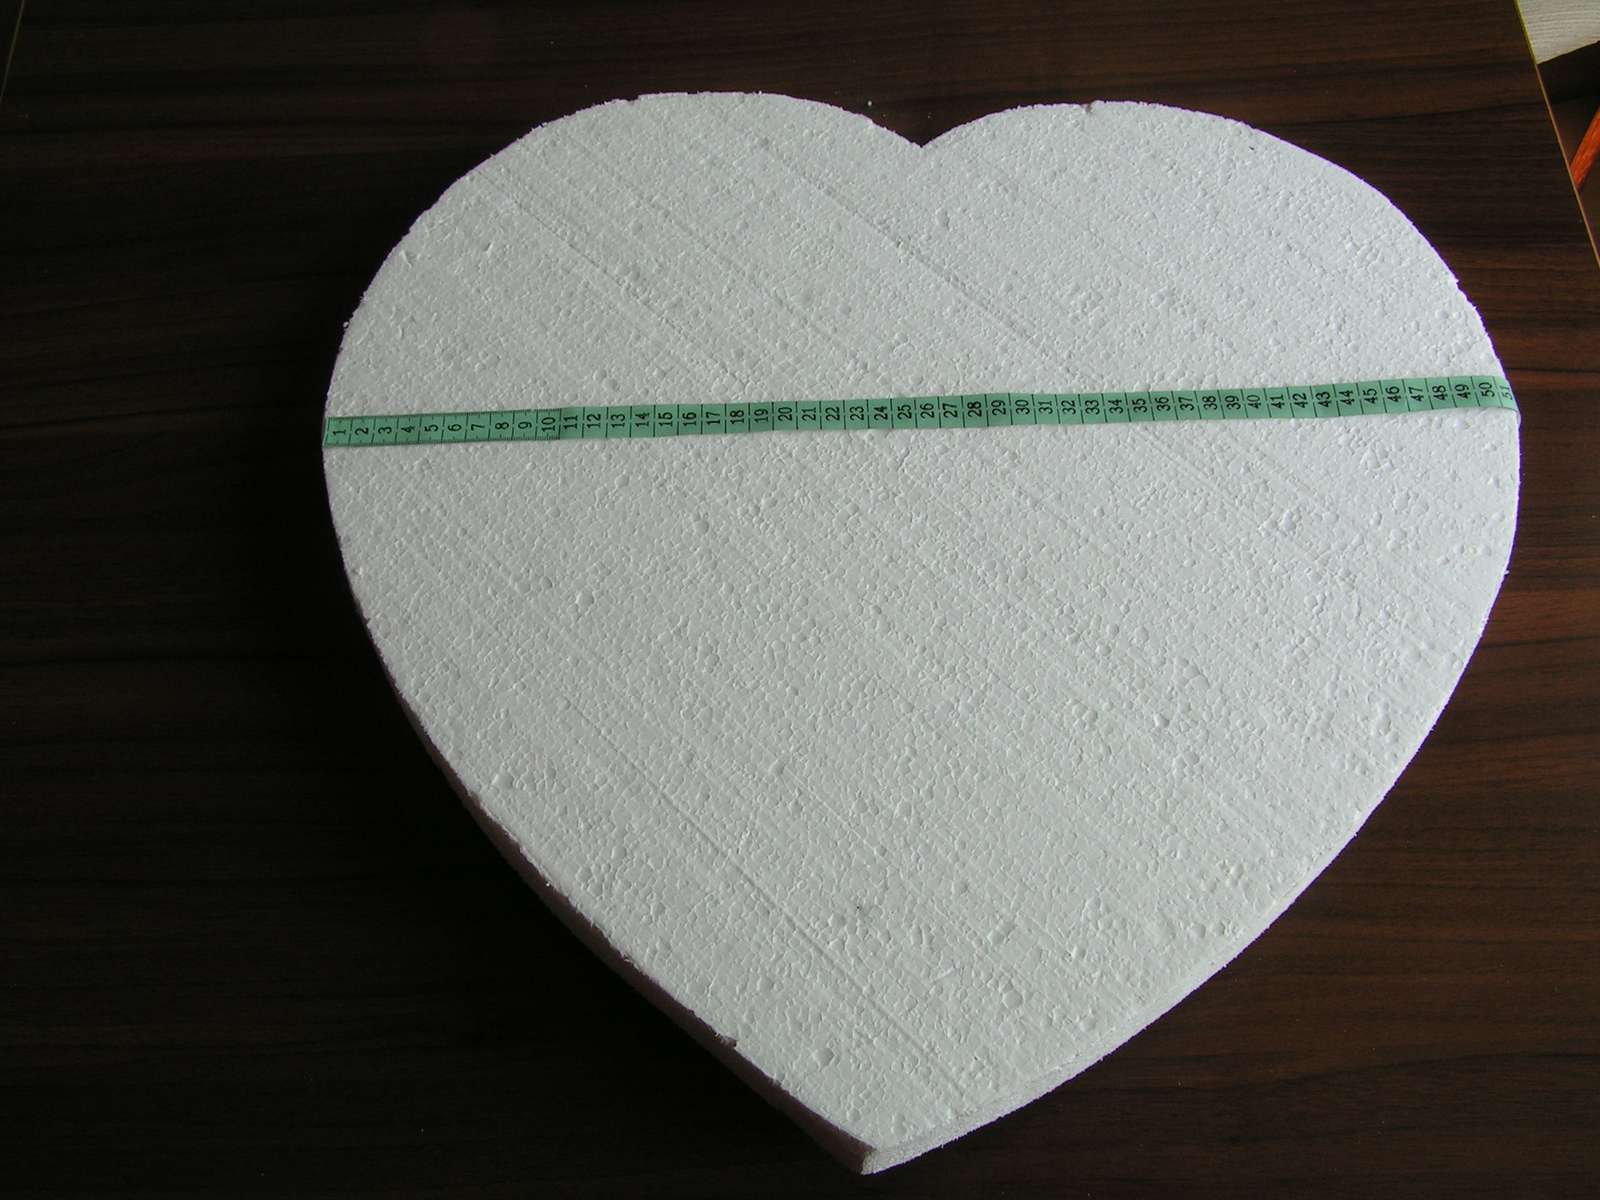 Polystyrenové srdce cca 50 cm - Obrázek č. 3